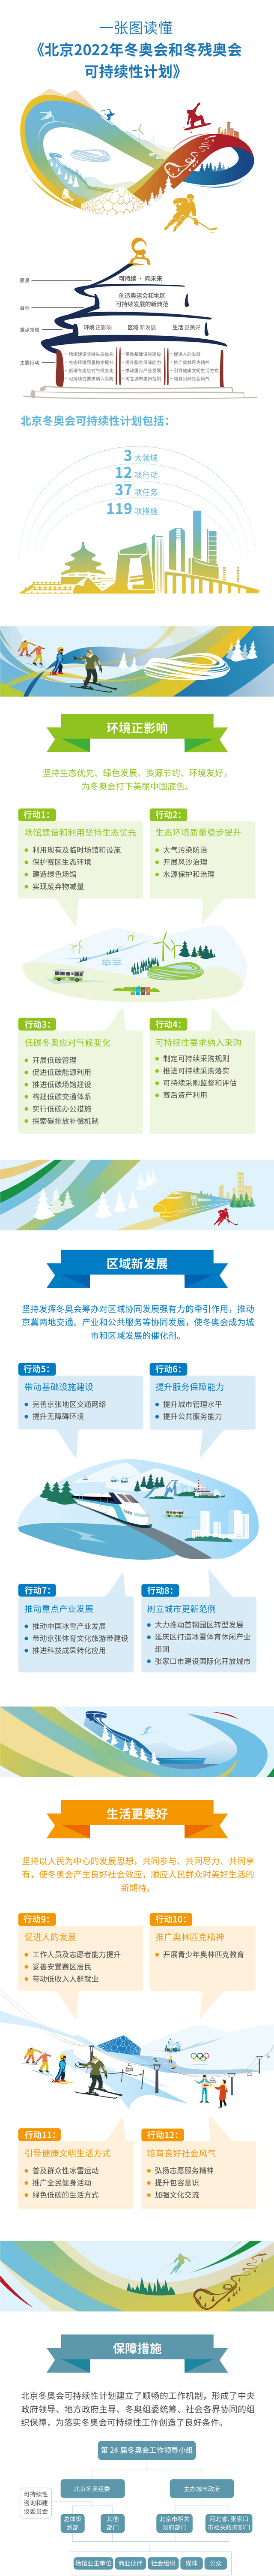 一圖看懂《北京2022年冬奧會和冬殘奧會可持續性計劃》